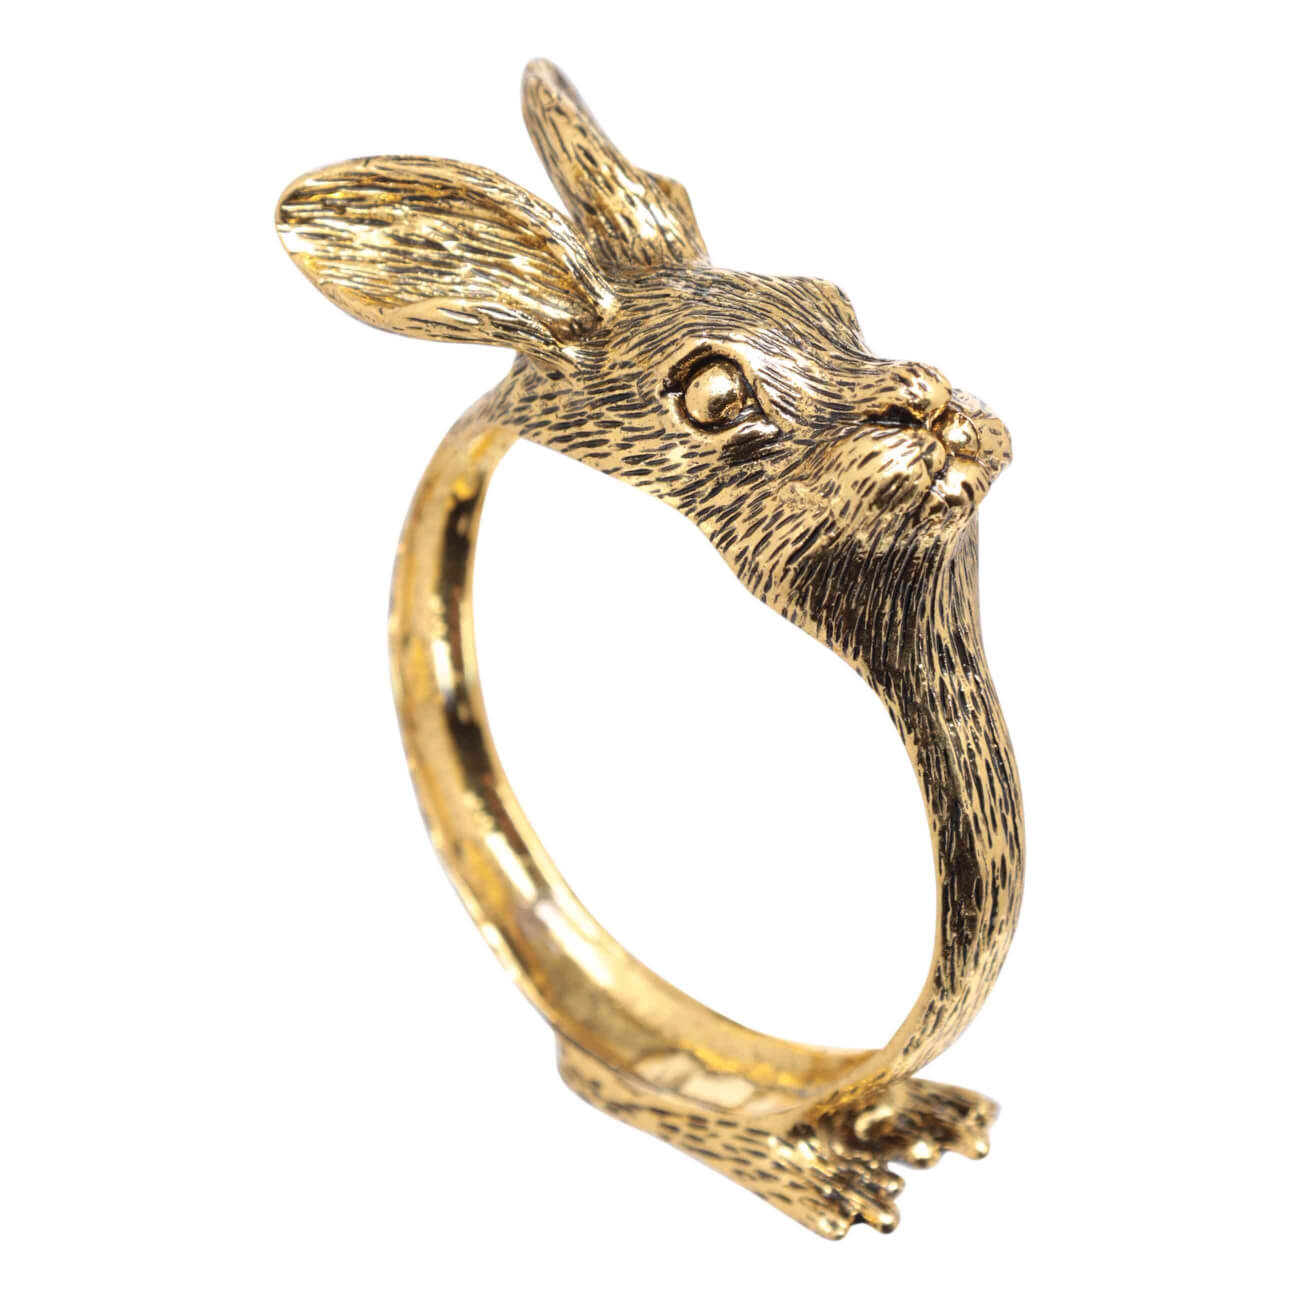 Кольцо для салфеток, 6 см, металл, золотистое, Кролик, Rabbit gold кольцо для салфеток 5 см 2 шт бисер круглое золотистое shiny beads